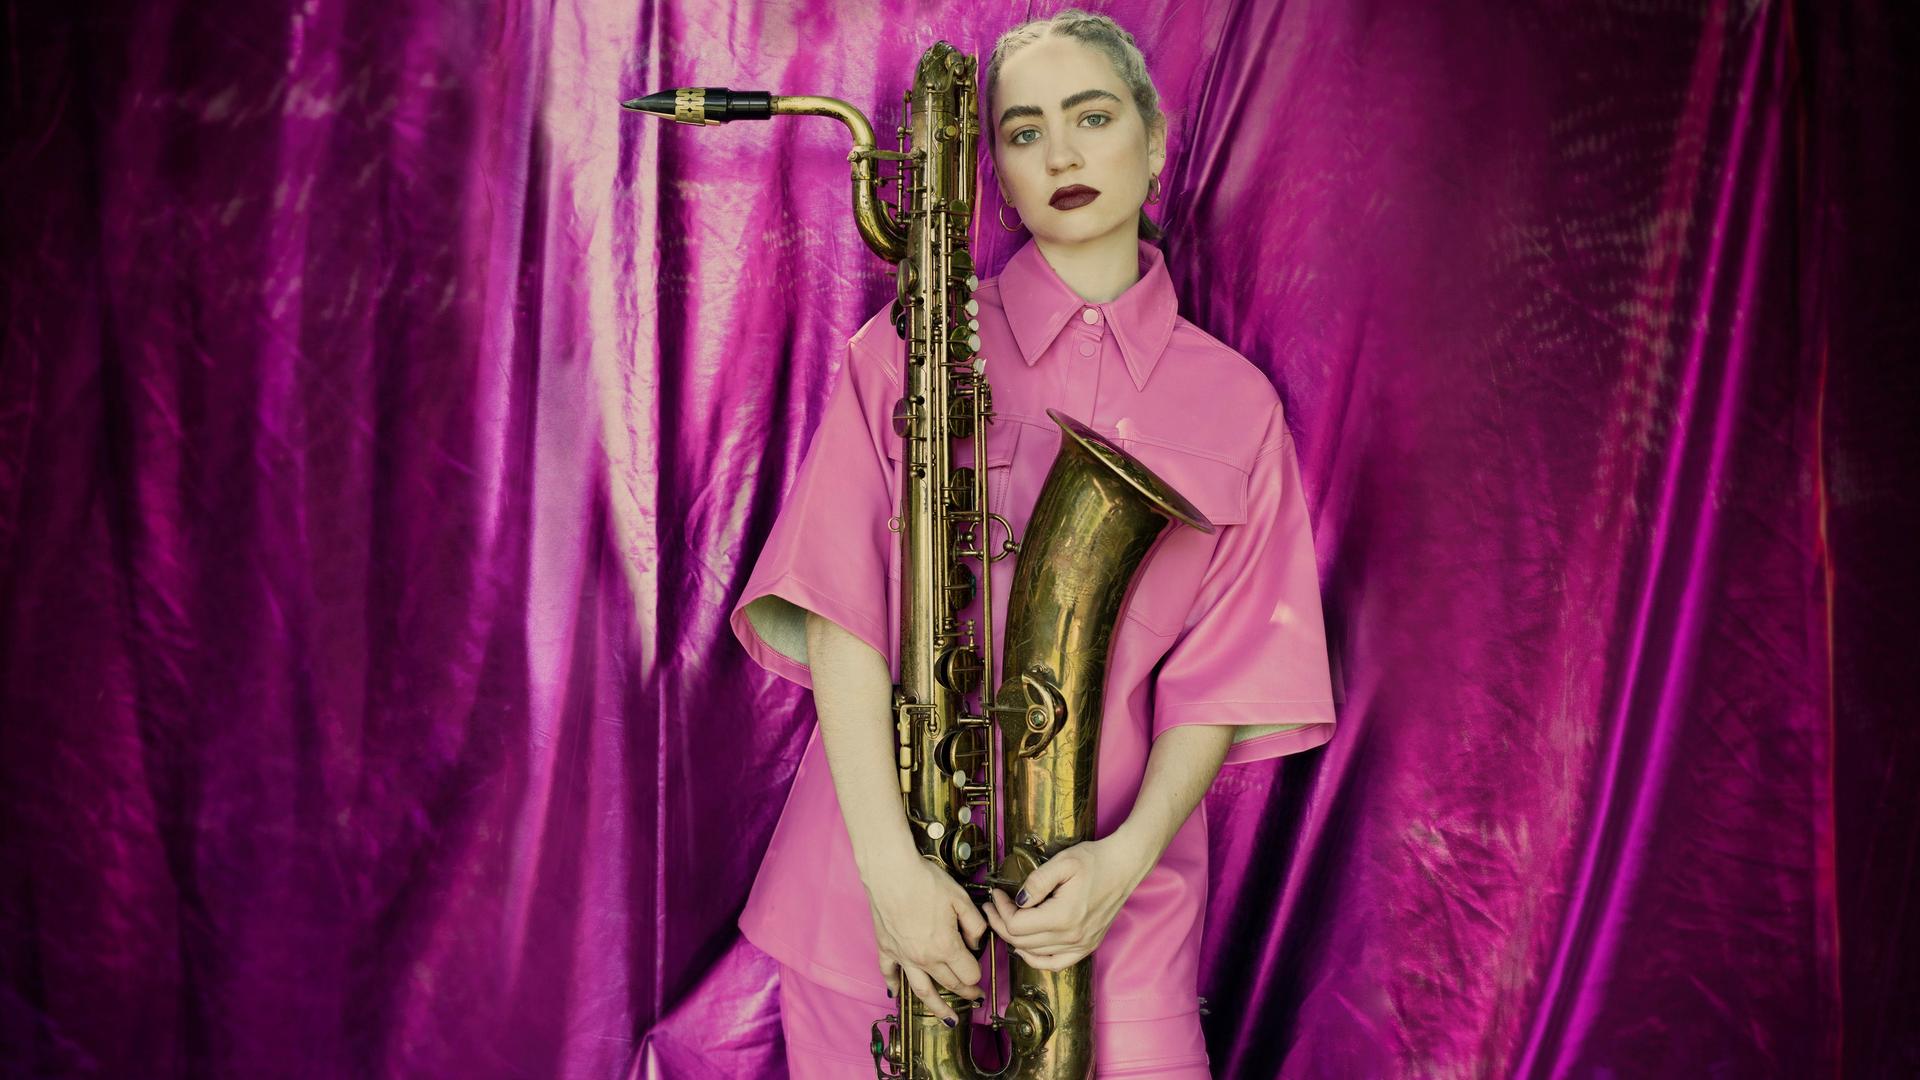 Eine junge Frau steht komplett in rosa gekleidet mit einem Saxofon in der Hand vor einem pinken Vorhang.